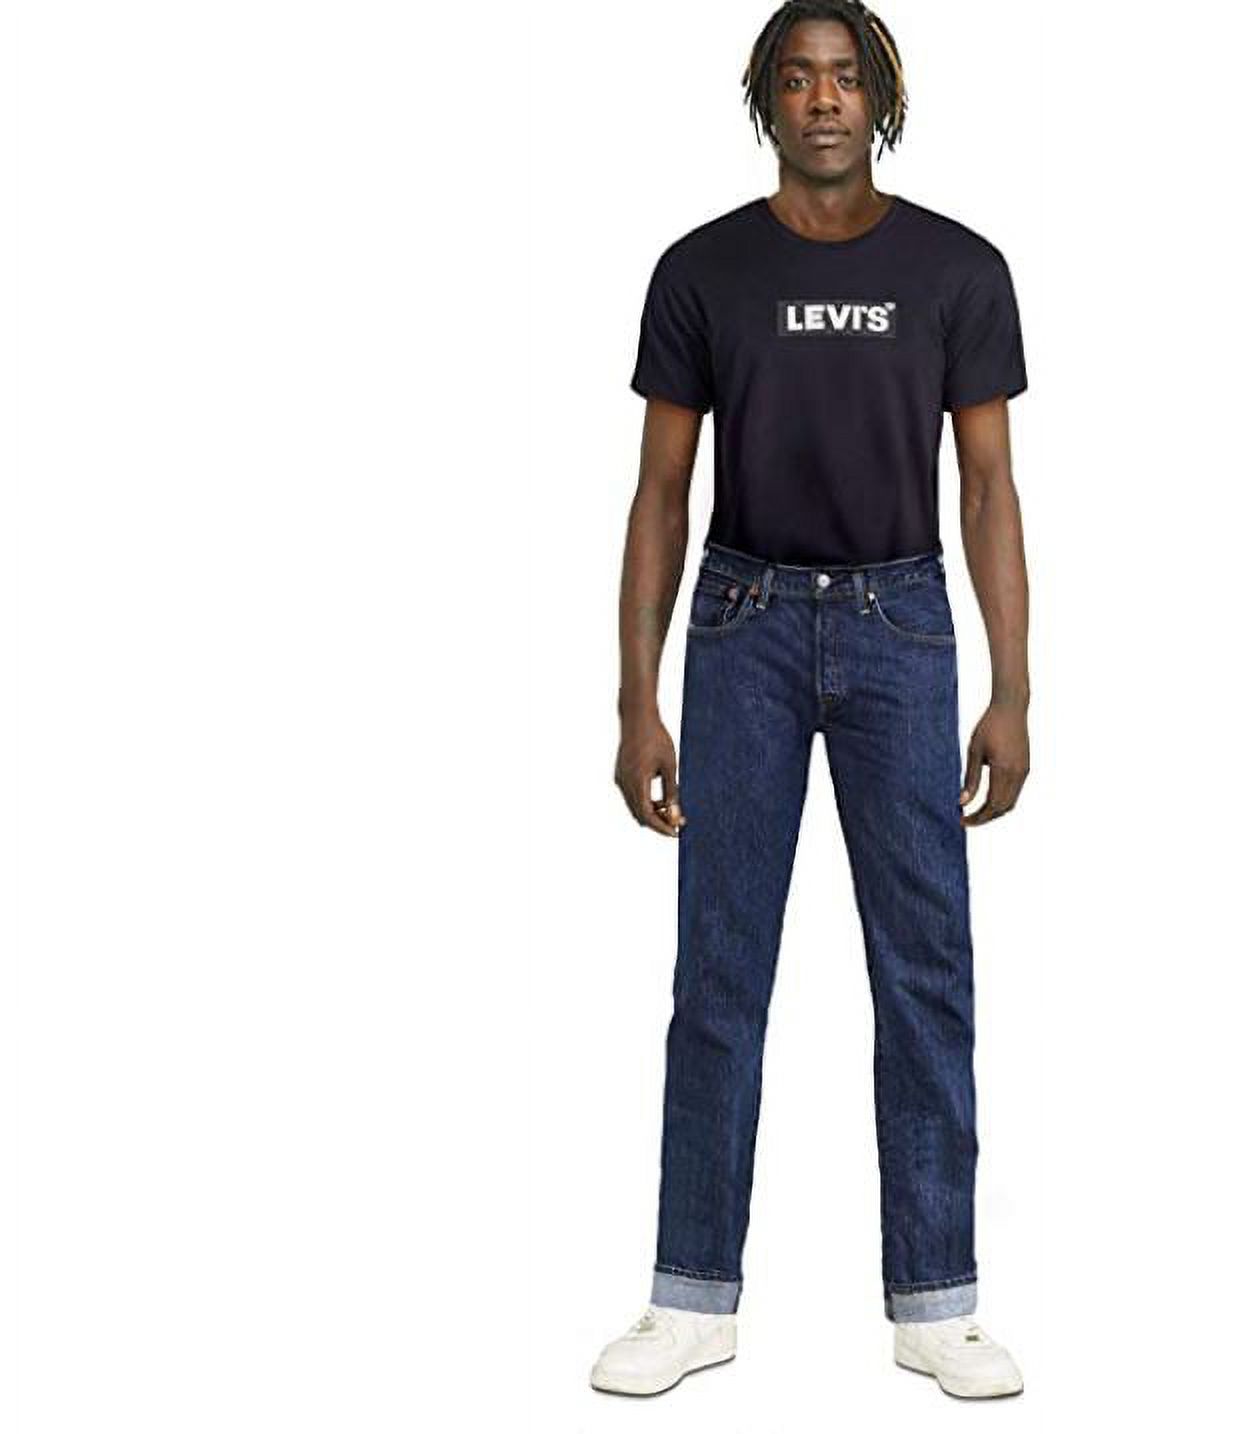 Levi's Men's 501 Original Fit Jeans - image 4 of 6